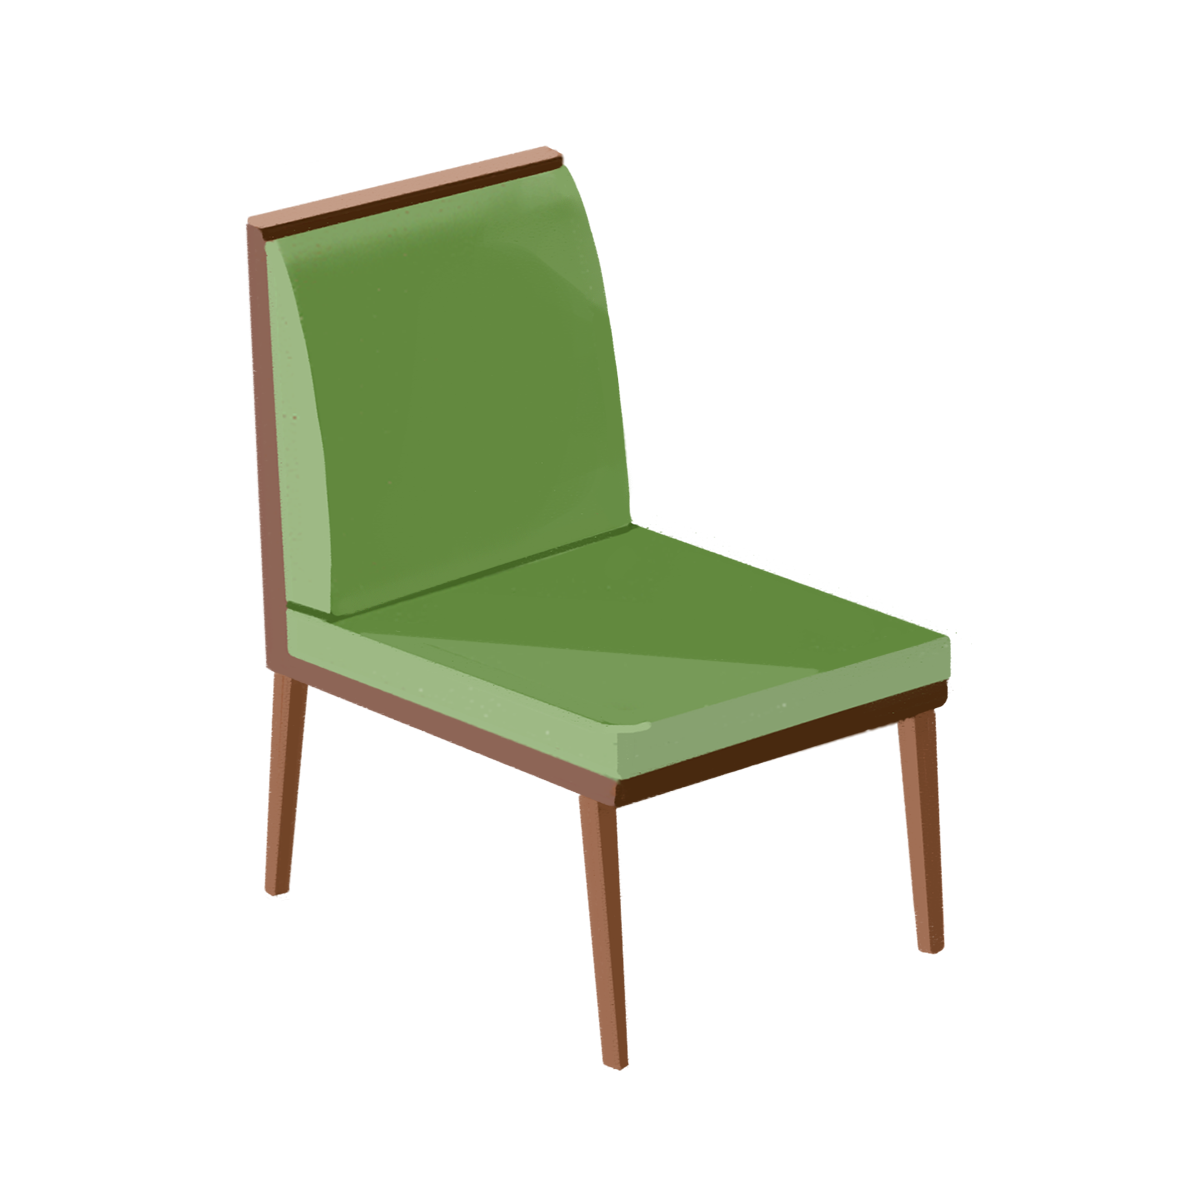 椅子 画像 フリー Amrowebdesigners Com